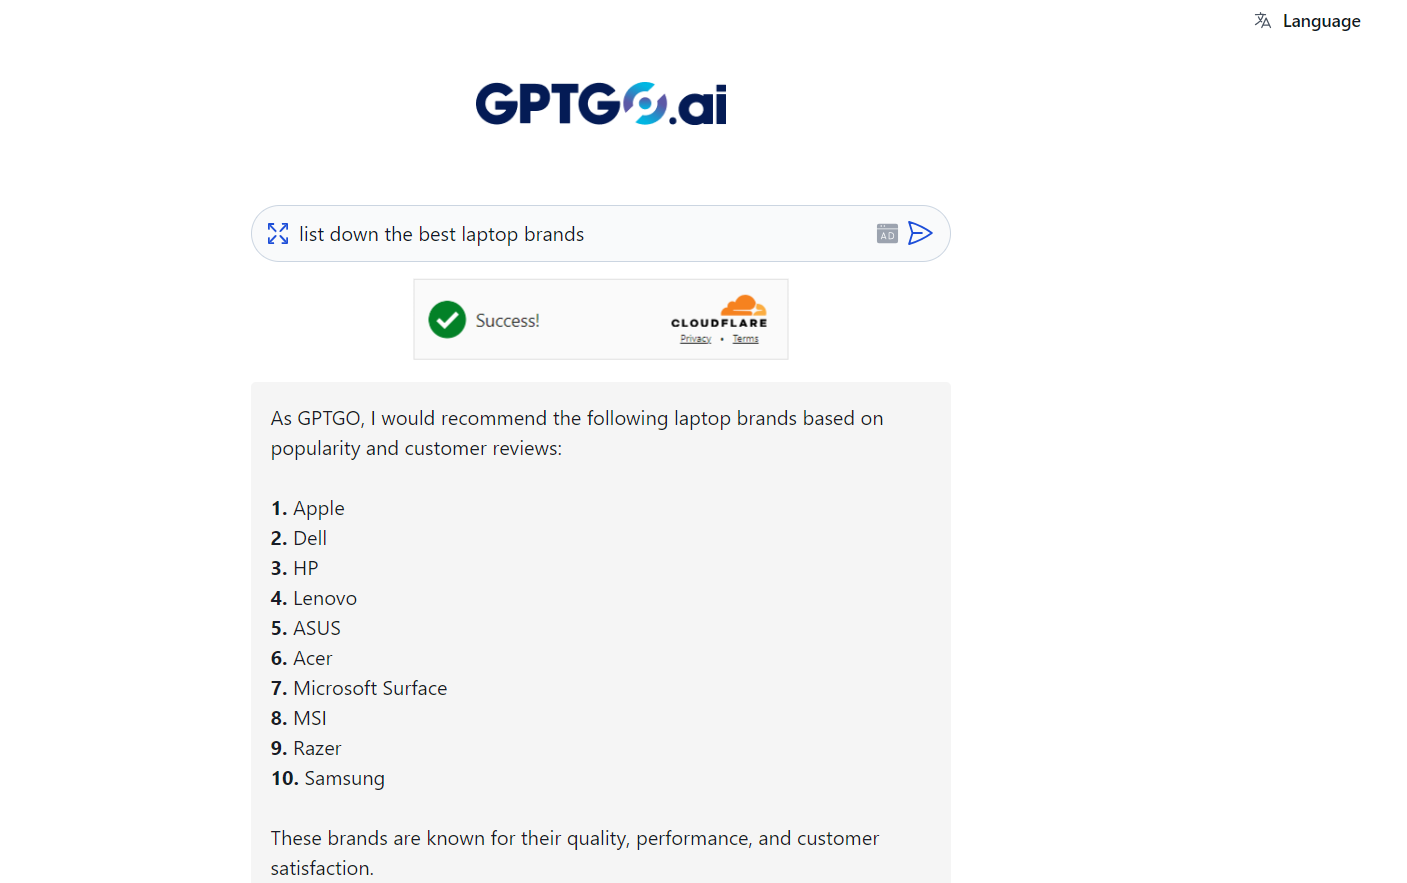 GPTGO-combina-as-capacidades-de-busca-do-Google-e-de-resposta-do-ChatGPT-em-uma-plataforma-interativa-gratuita-para-usuários.- 